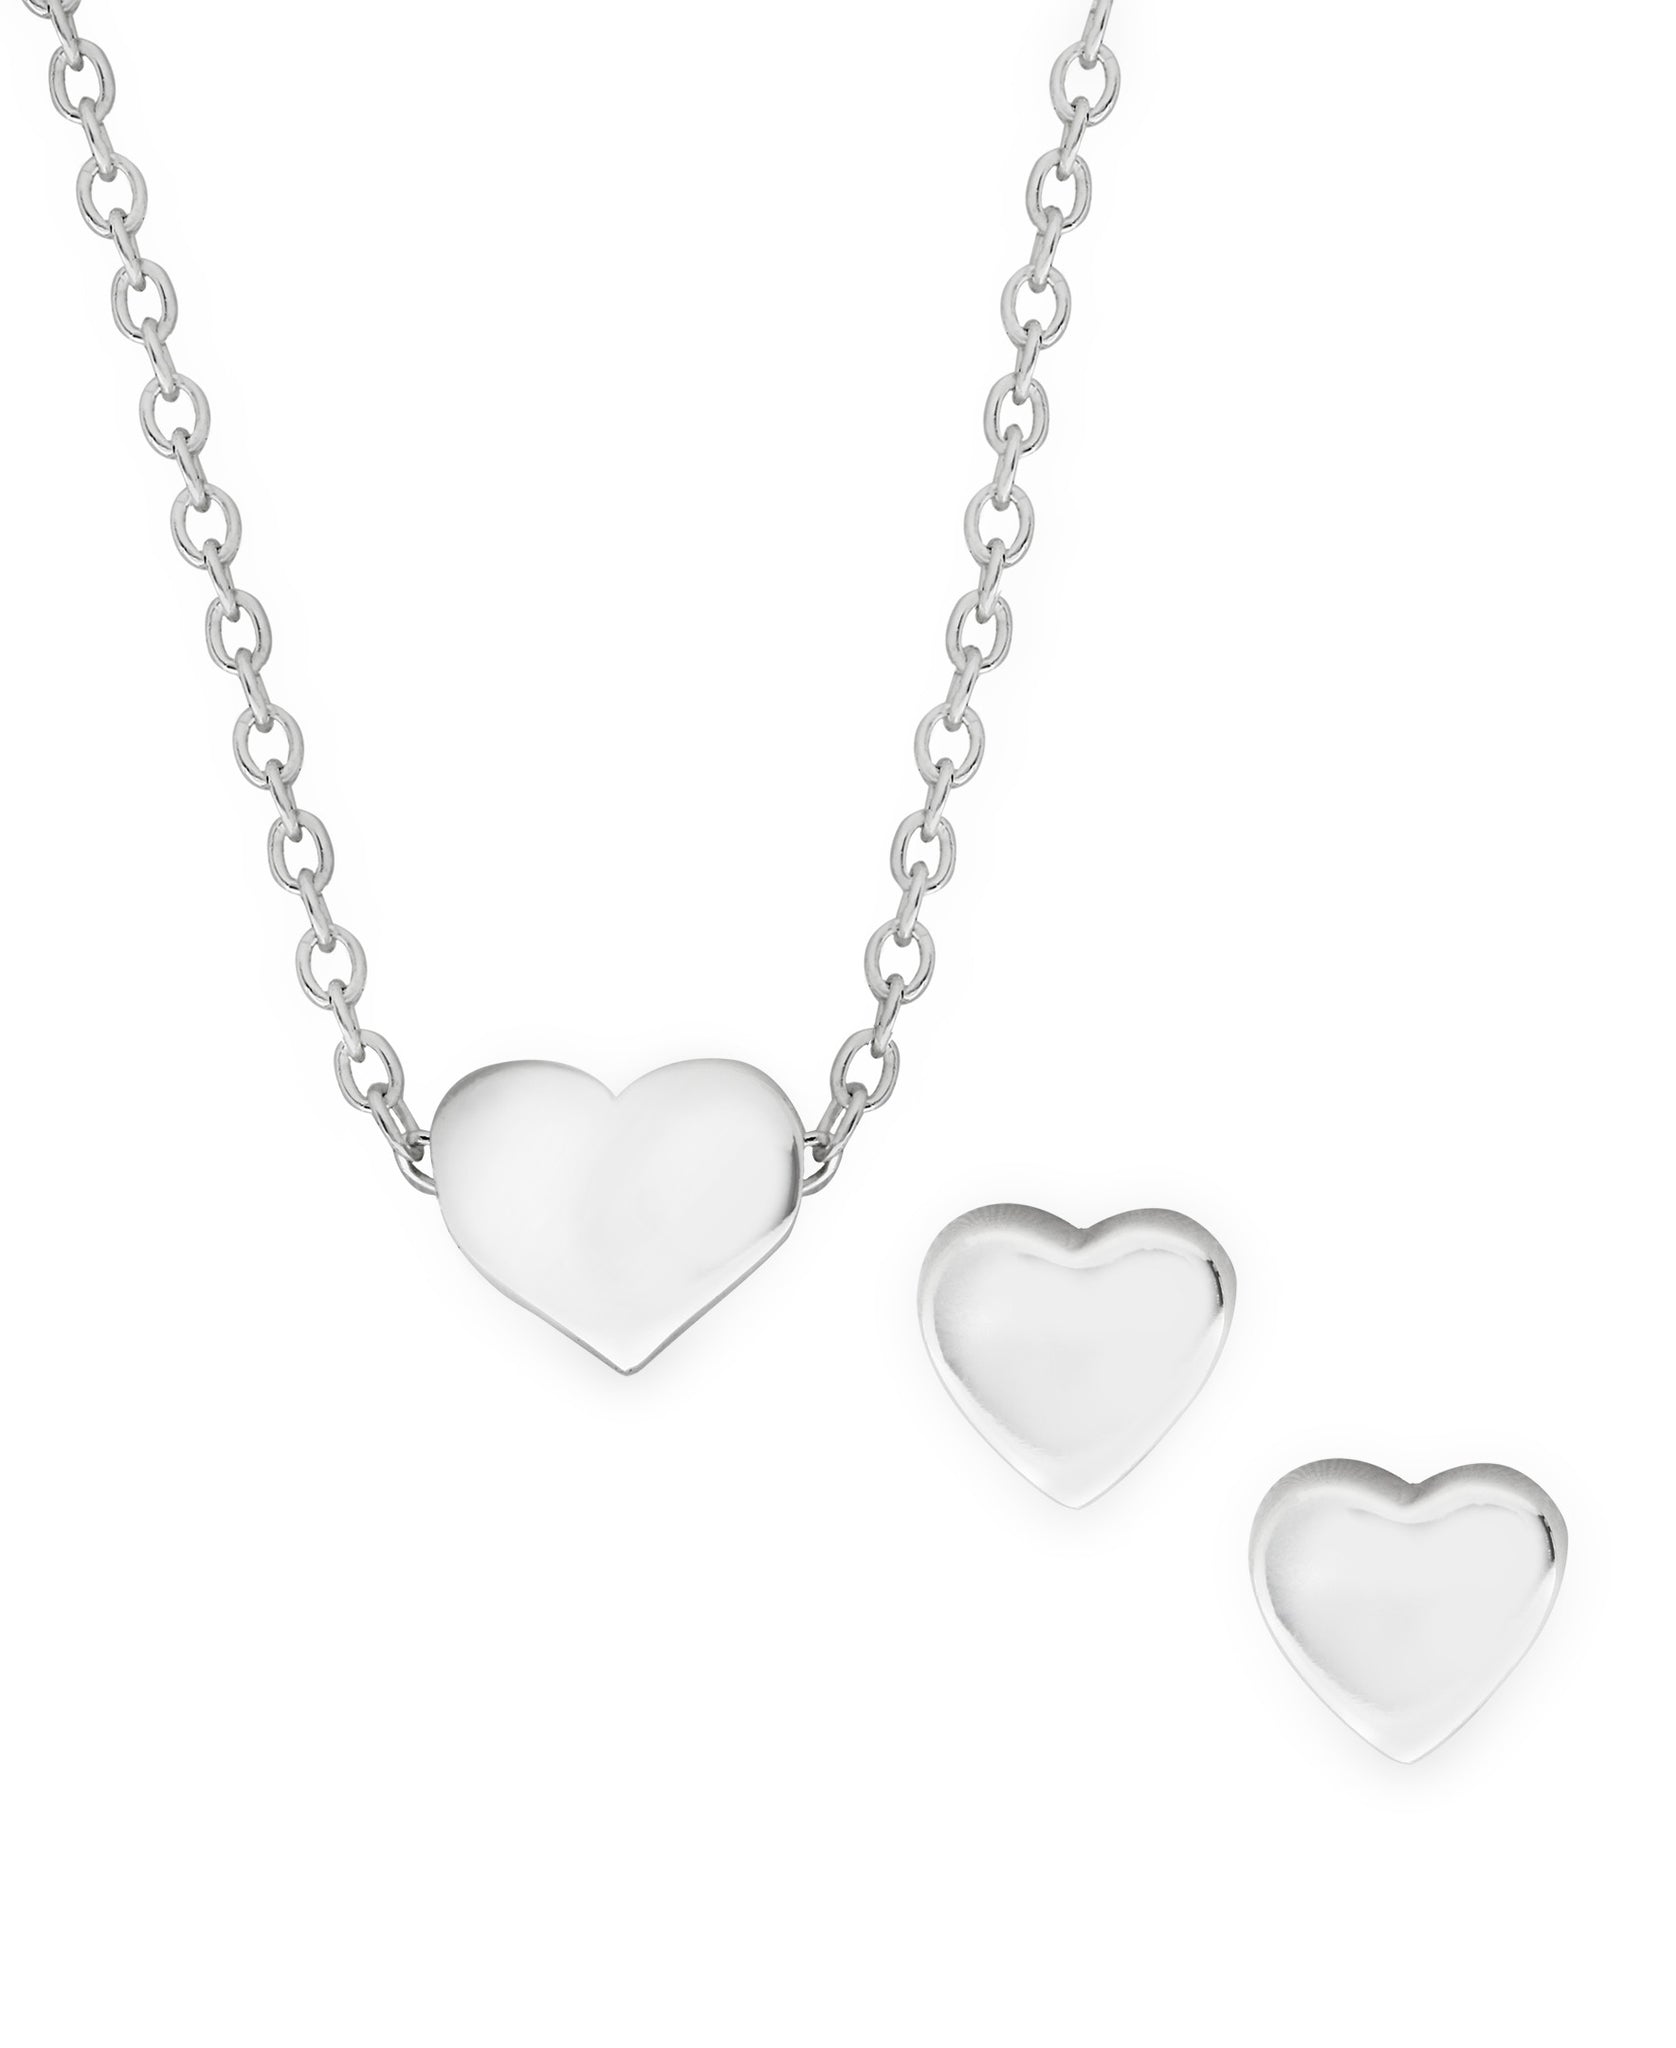 Children's Sterling Silver Heart Pendant Necklace & Stud Earrings Set - Rhona Sutton Jewellery